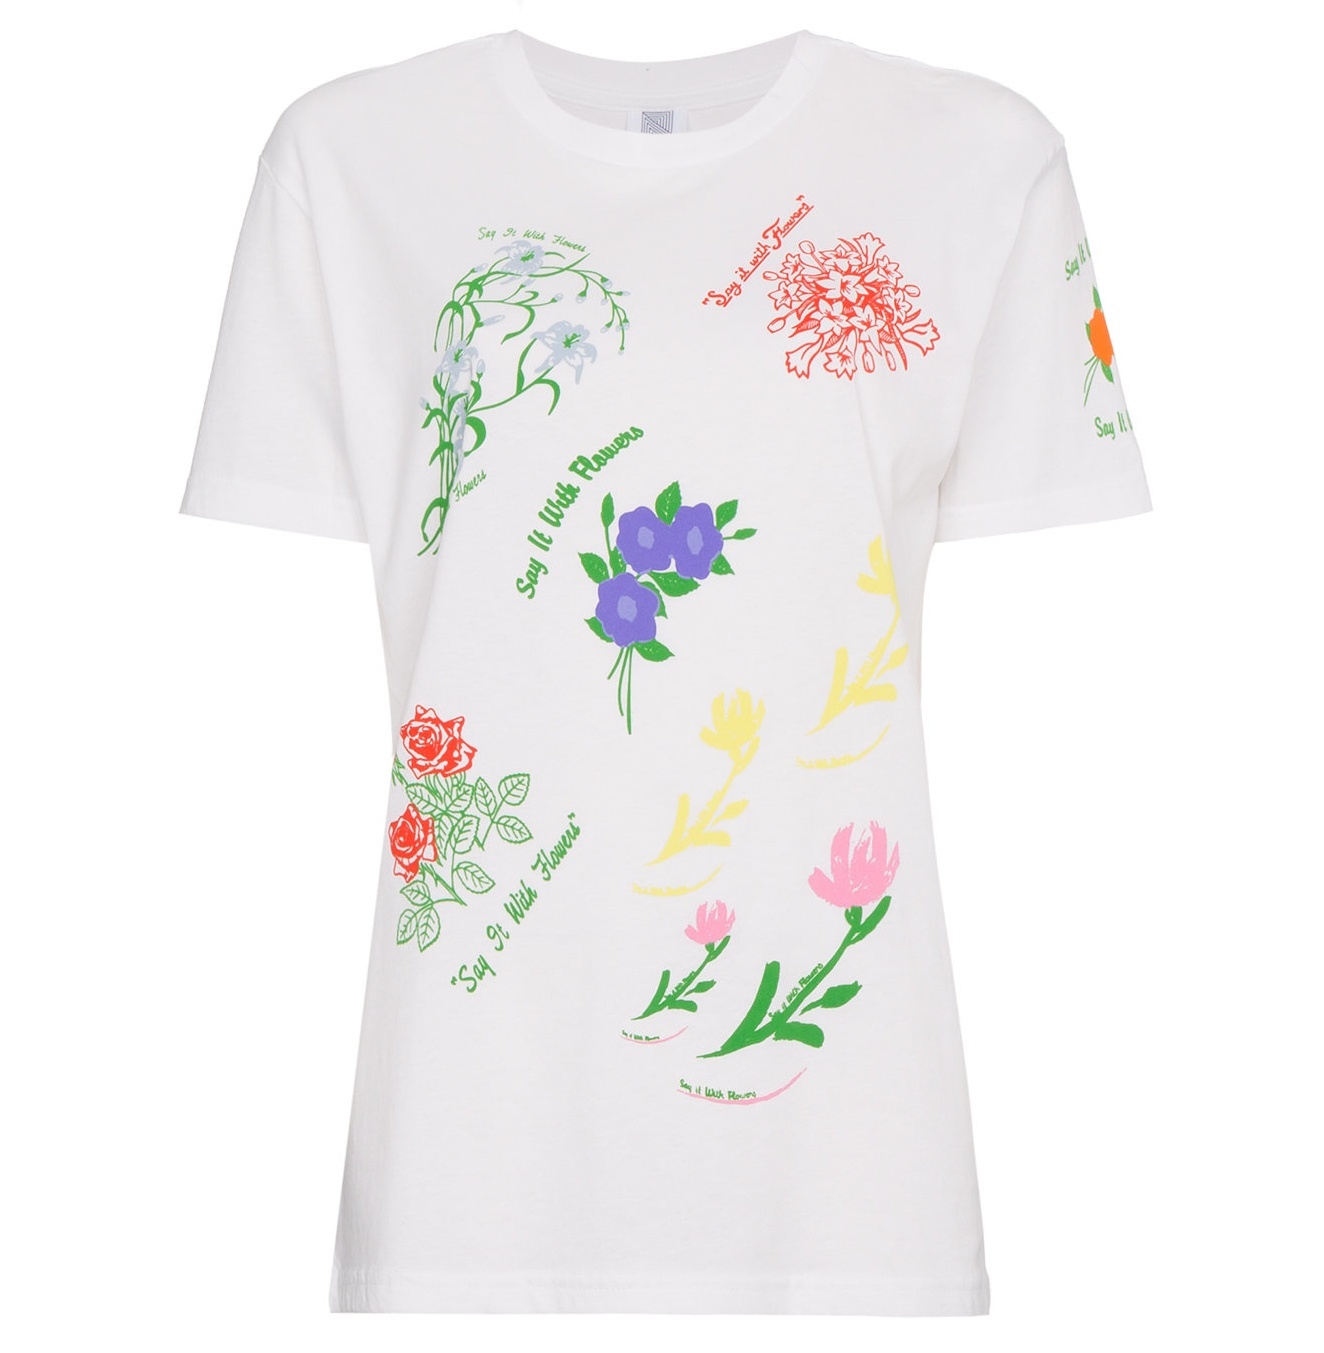 Indie Designs Floral Printed T-shirt – Indie Designs Clothing